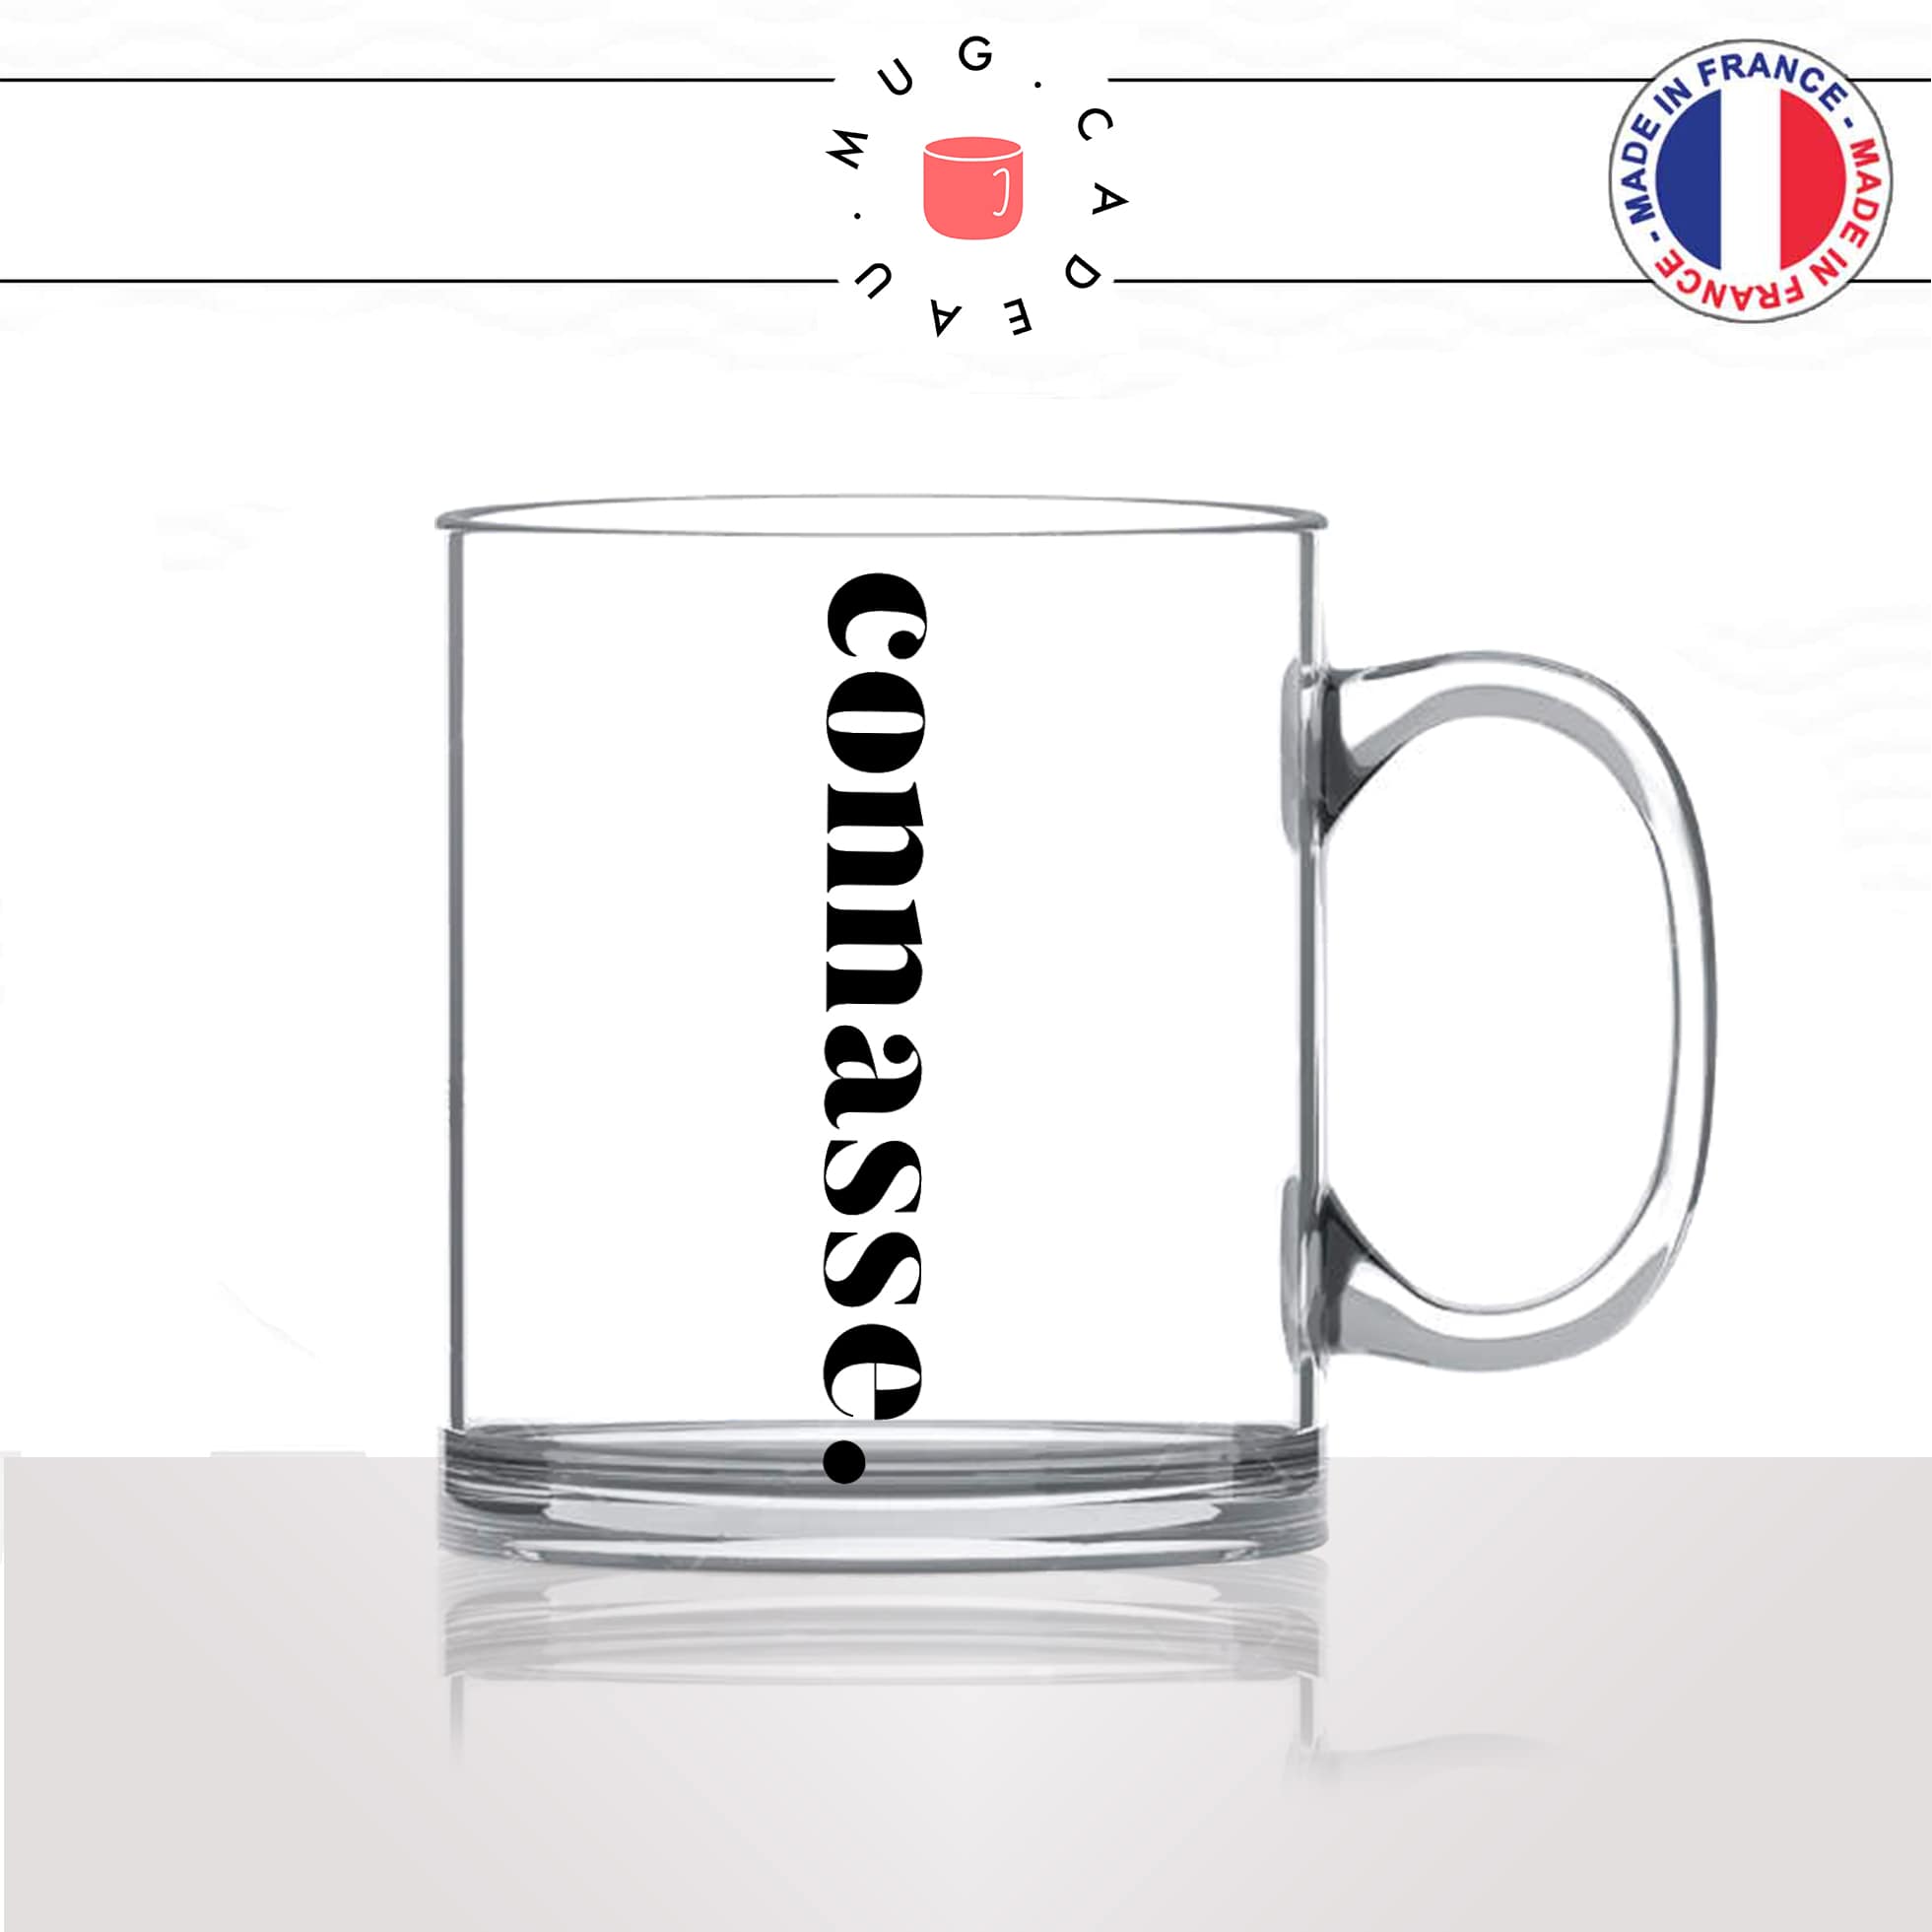 mug-tasse-en-verre-transparent-glass-connasse-calligraphie-lettrine-mot-femme-conne-couple-décoration-amie-idée-cadeau-original-personnalisé-café-thé2-min